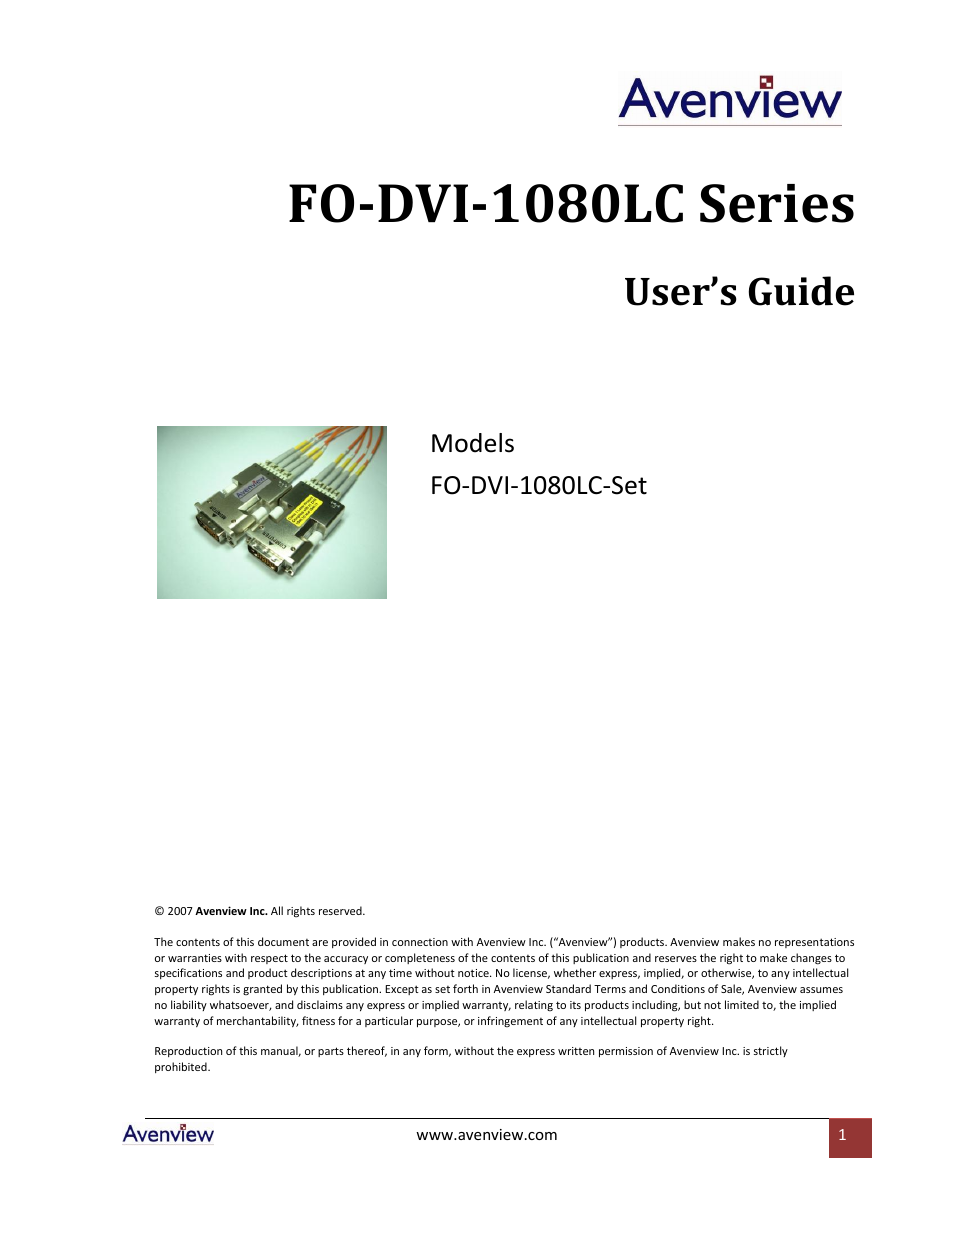 FO-DVI-1080LC-Set